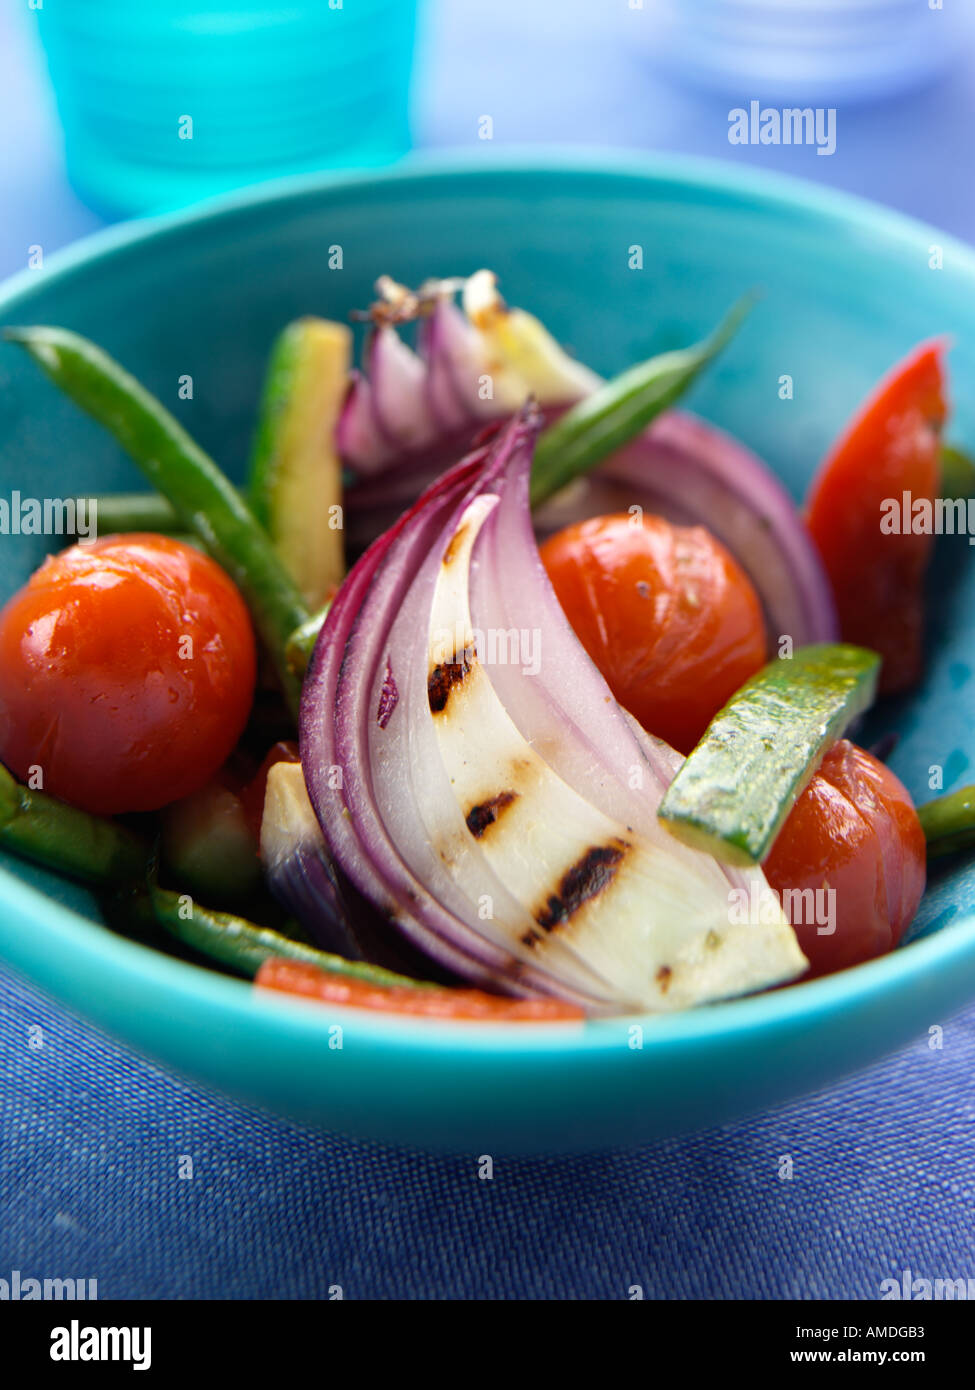 Roast Vegetable salad Stock Photo - Alamy